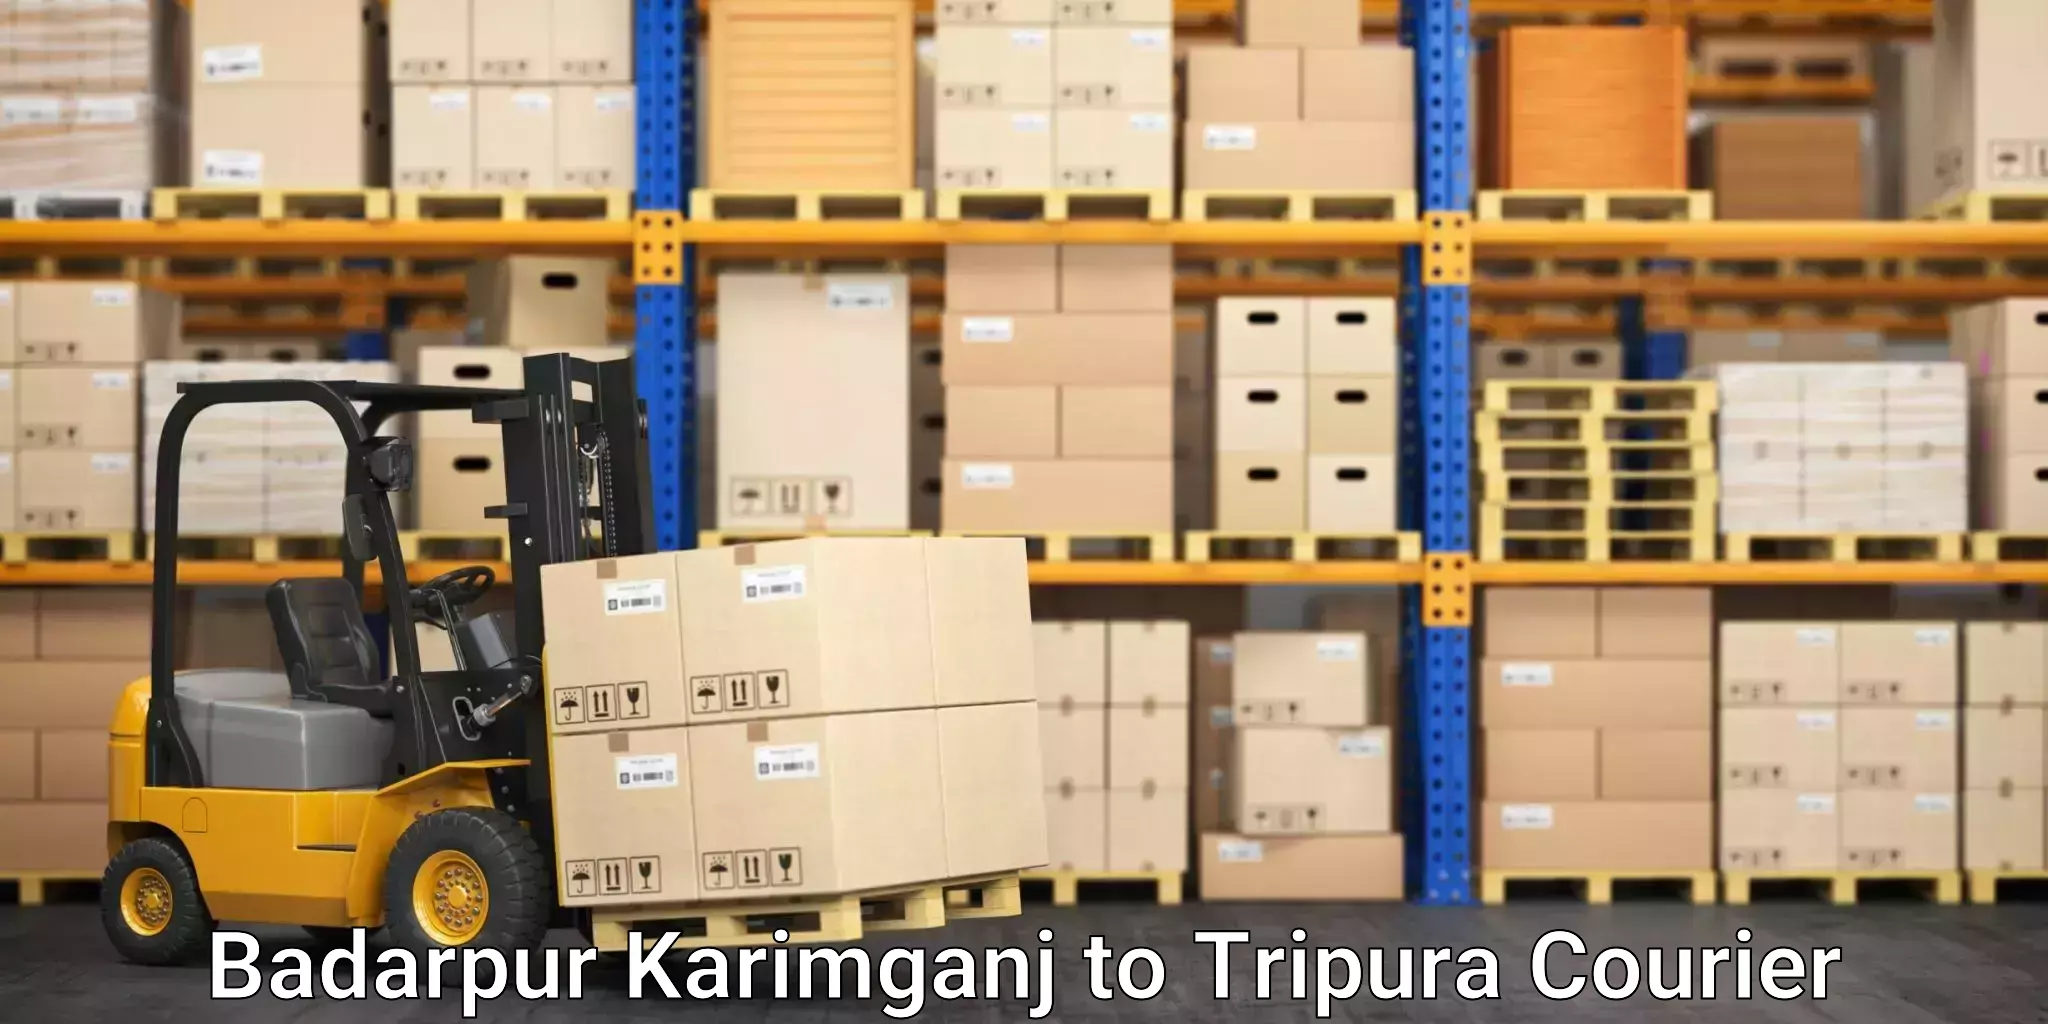 State-of-the-art courier technology Badarpur Karimganj to Kumarghat